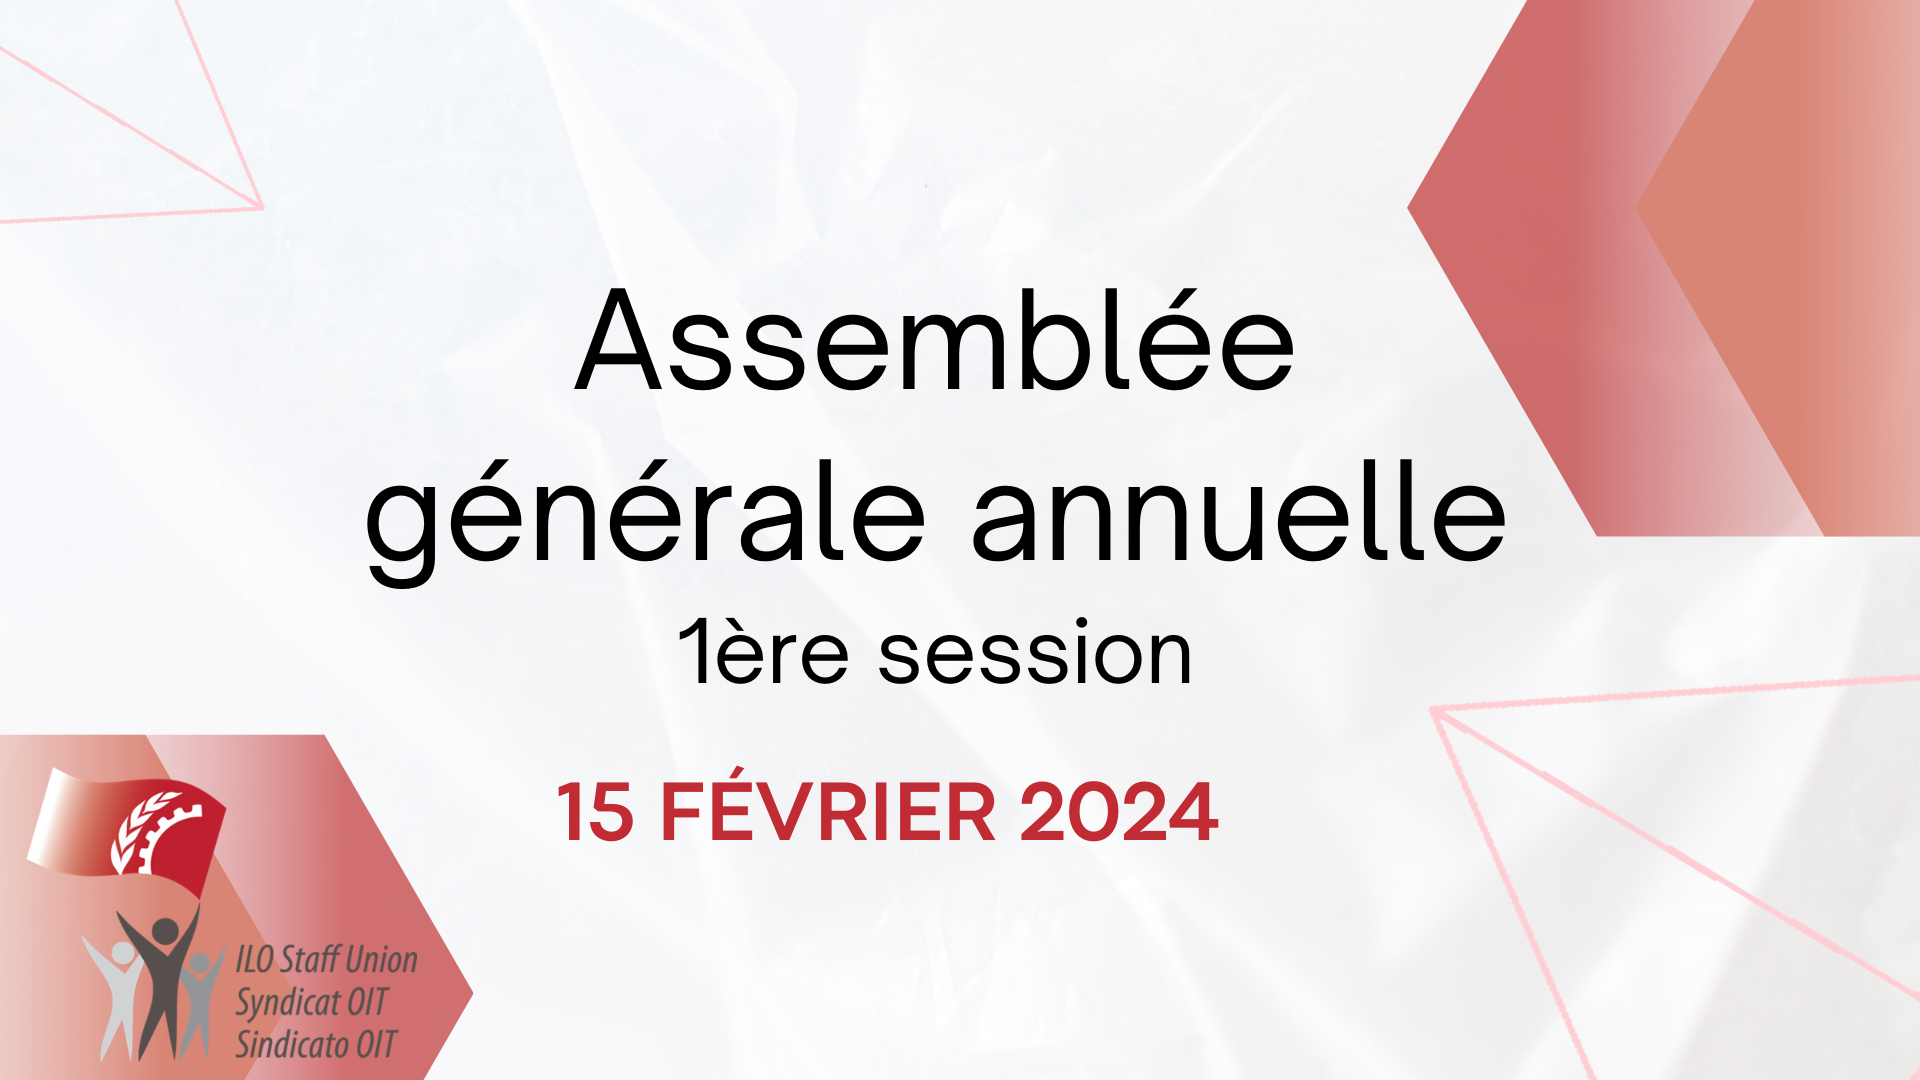 Assemblée générale annuelle - 1ère session - 15 février 2024